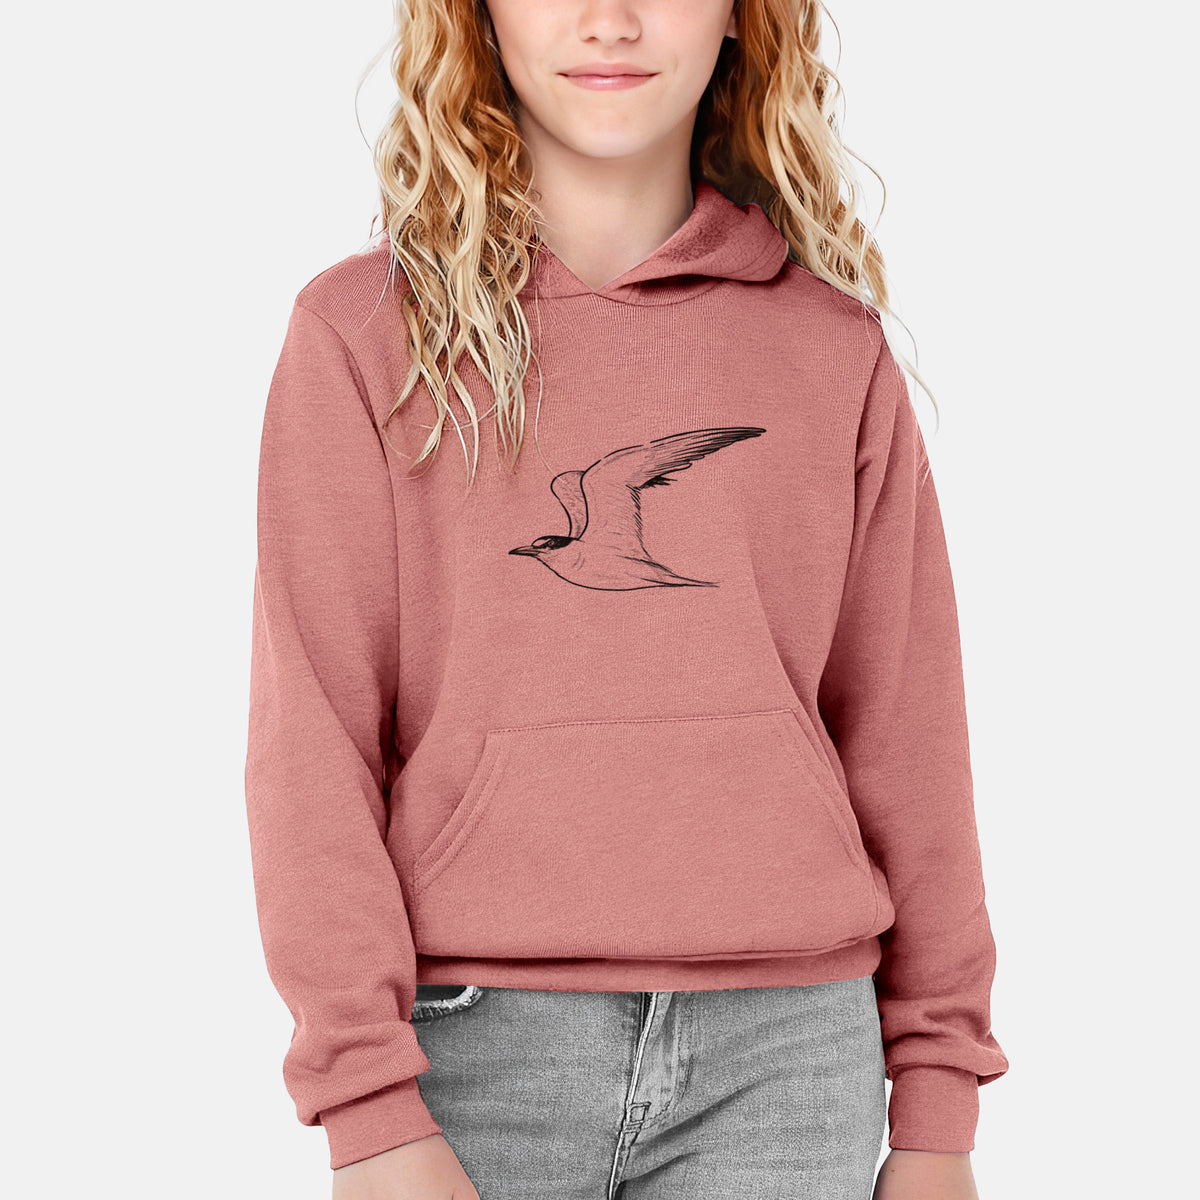 California Least Tern - Sterna antillarum browni - Youth Hoodie Sweatshirt